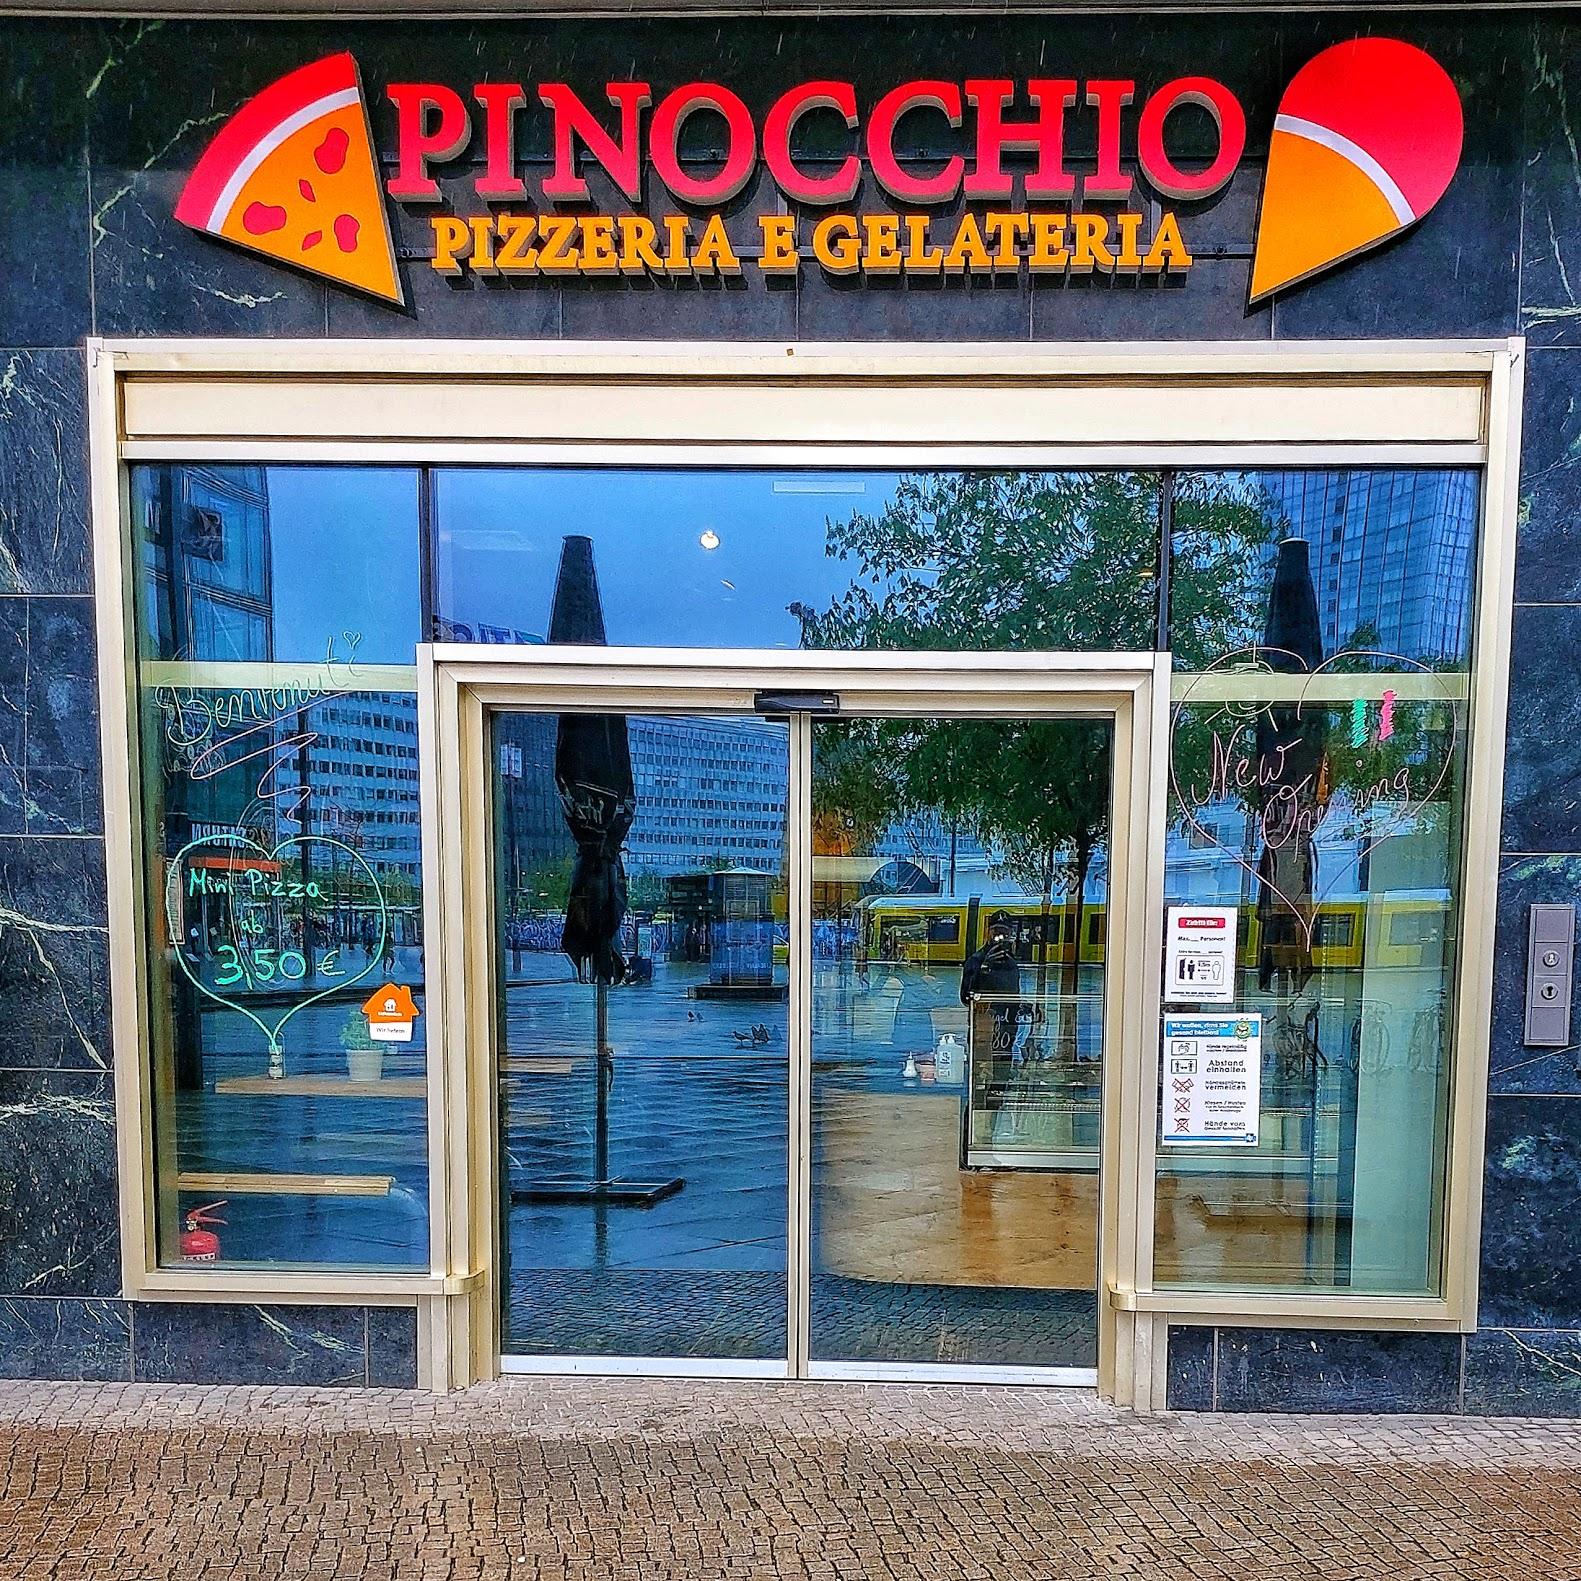 Restaurant "Pinocchio Pizza&Eis" in Berlin